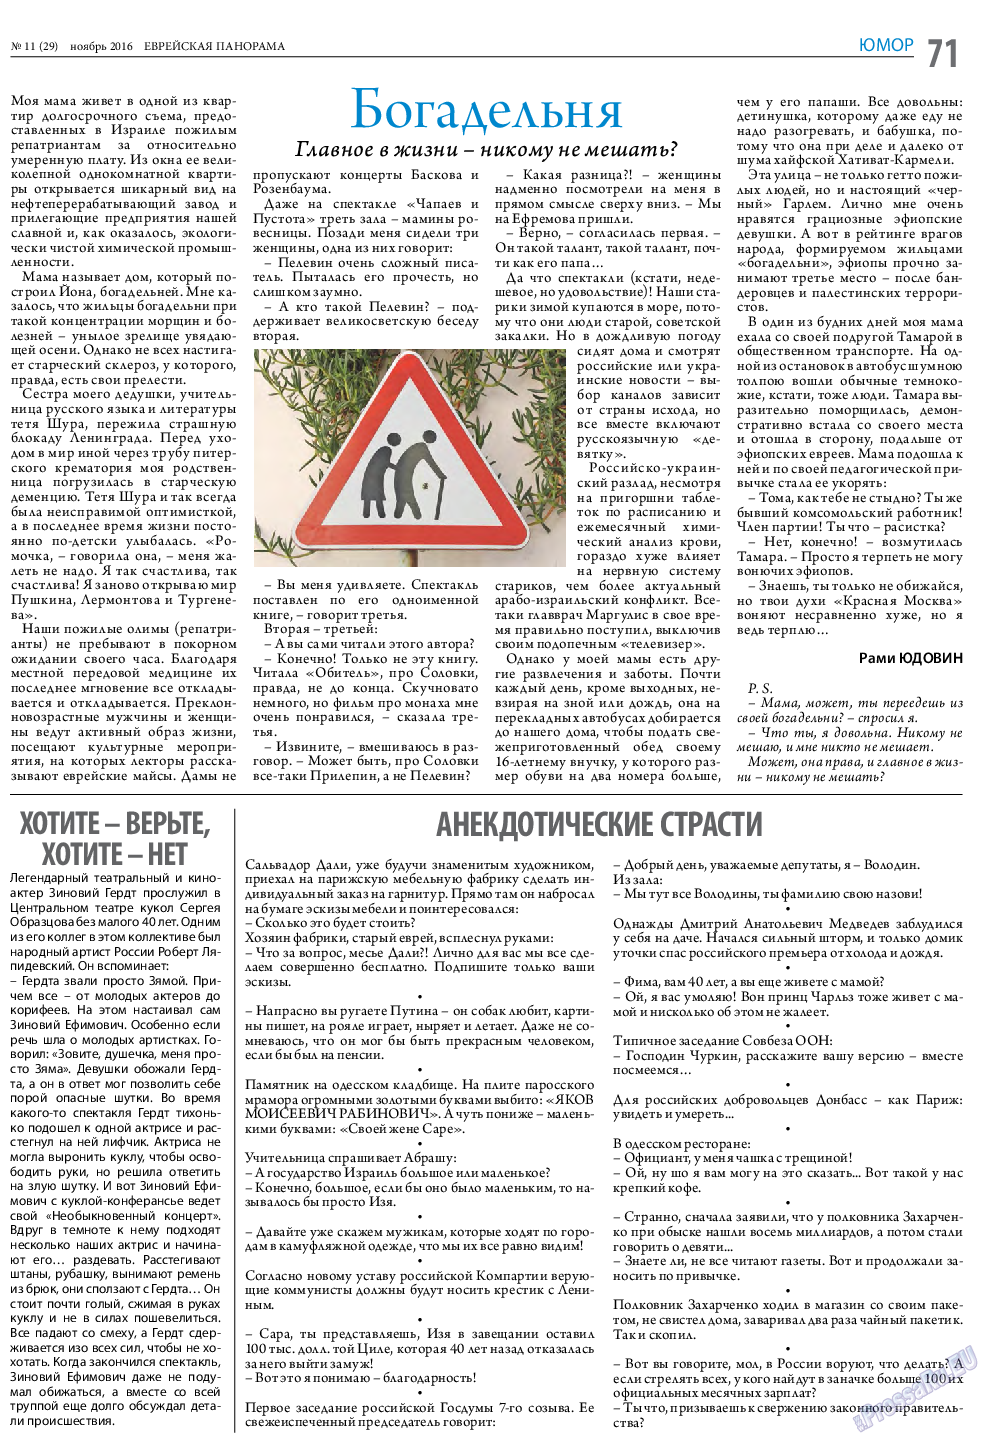 Еврейская панорама (газета). 2016 год, номер 11, стр. 71